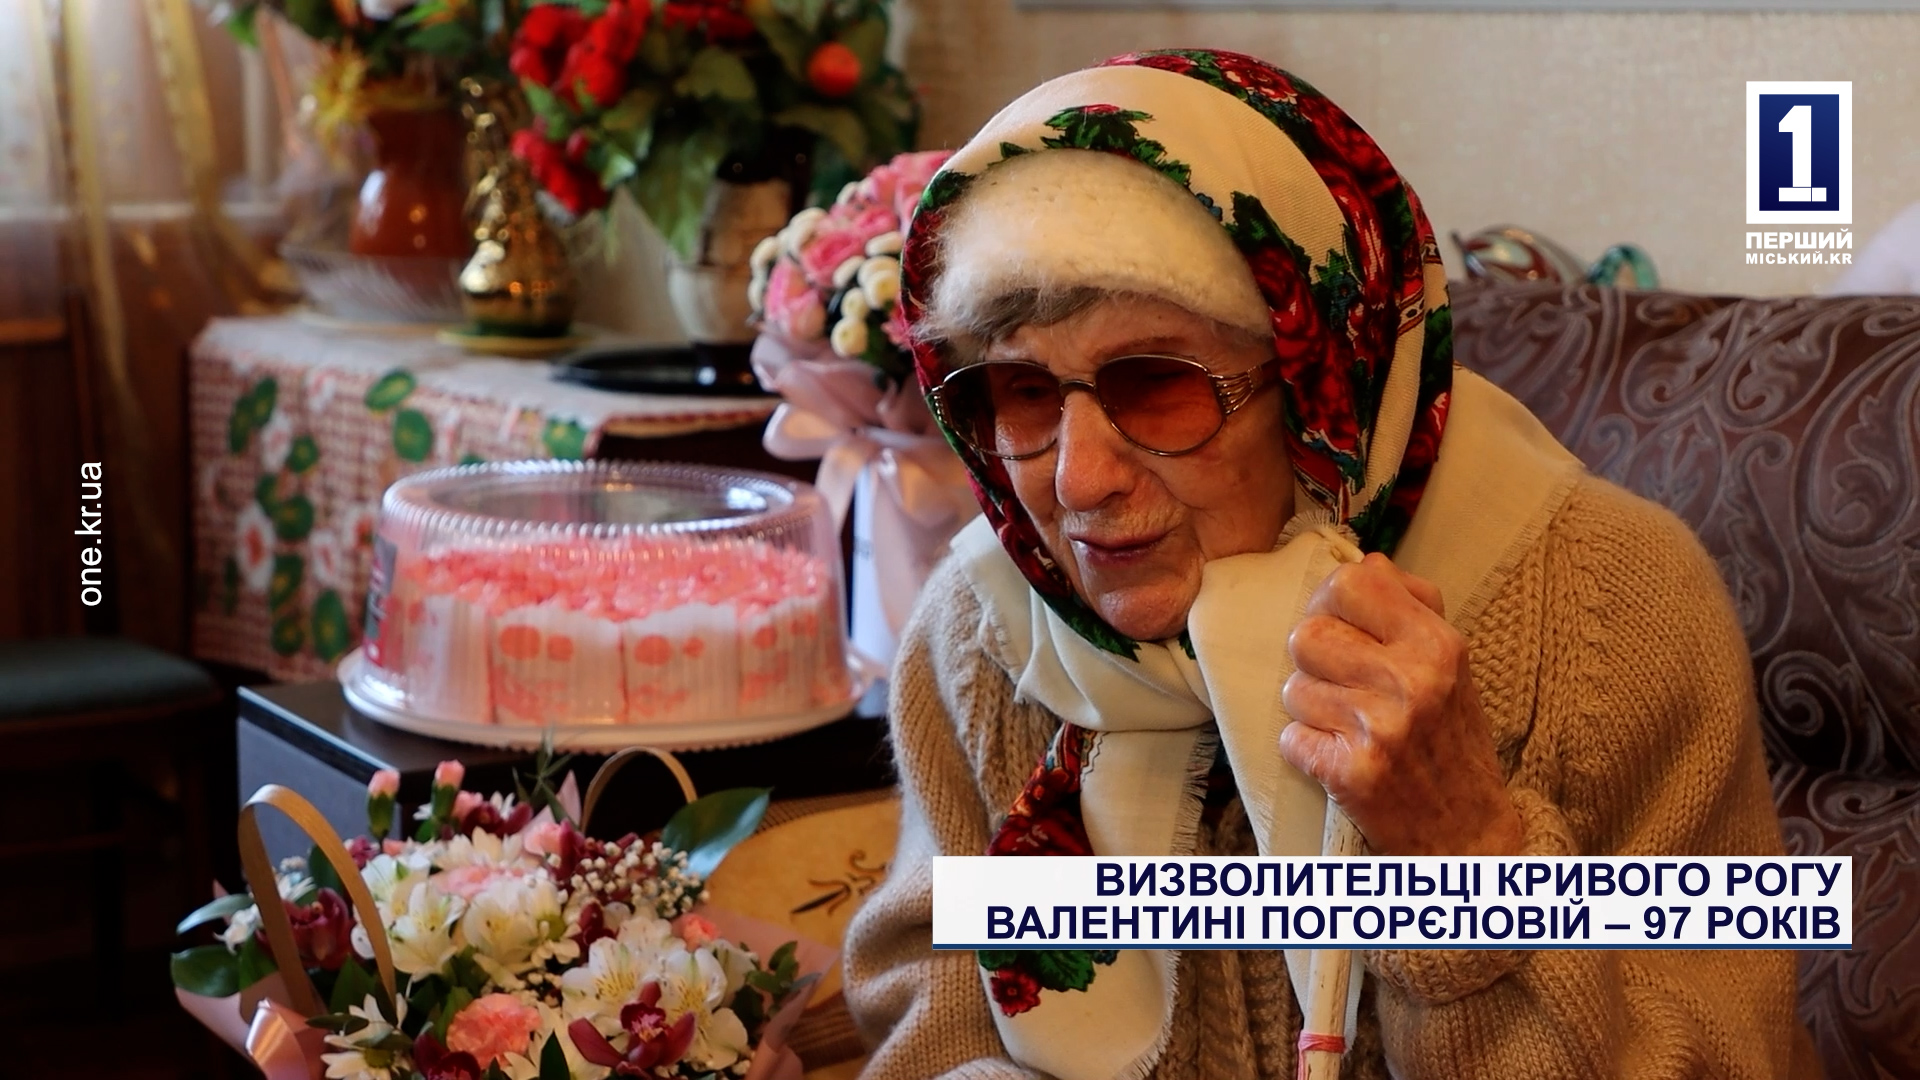 Освободительнице Кривого Рога Валентине Погореловой - 97 лет